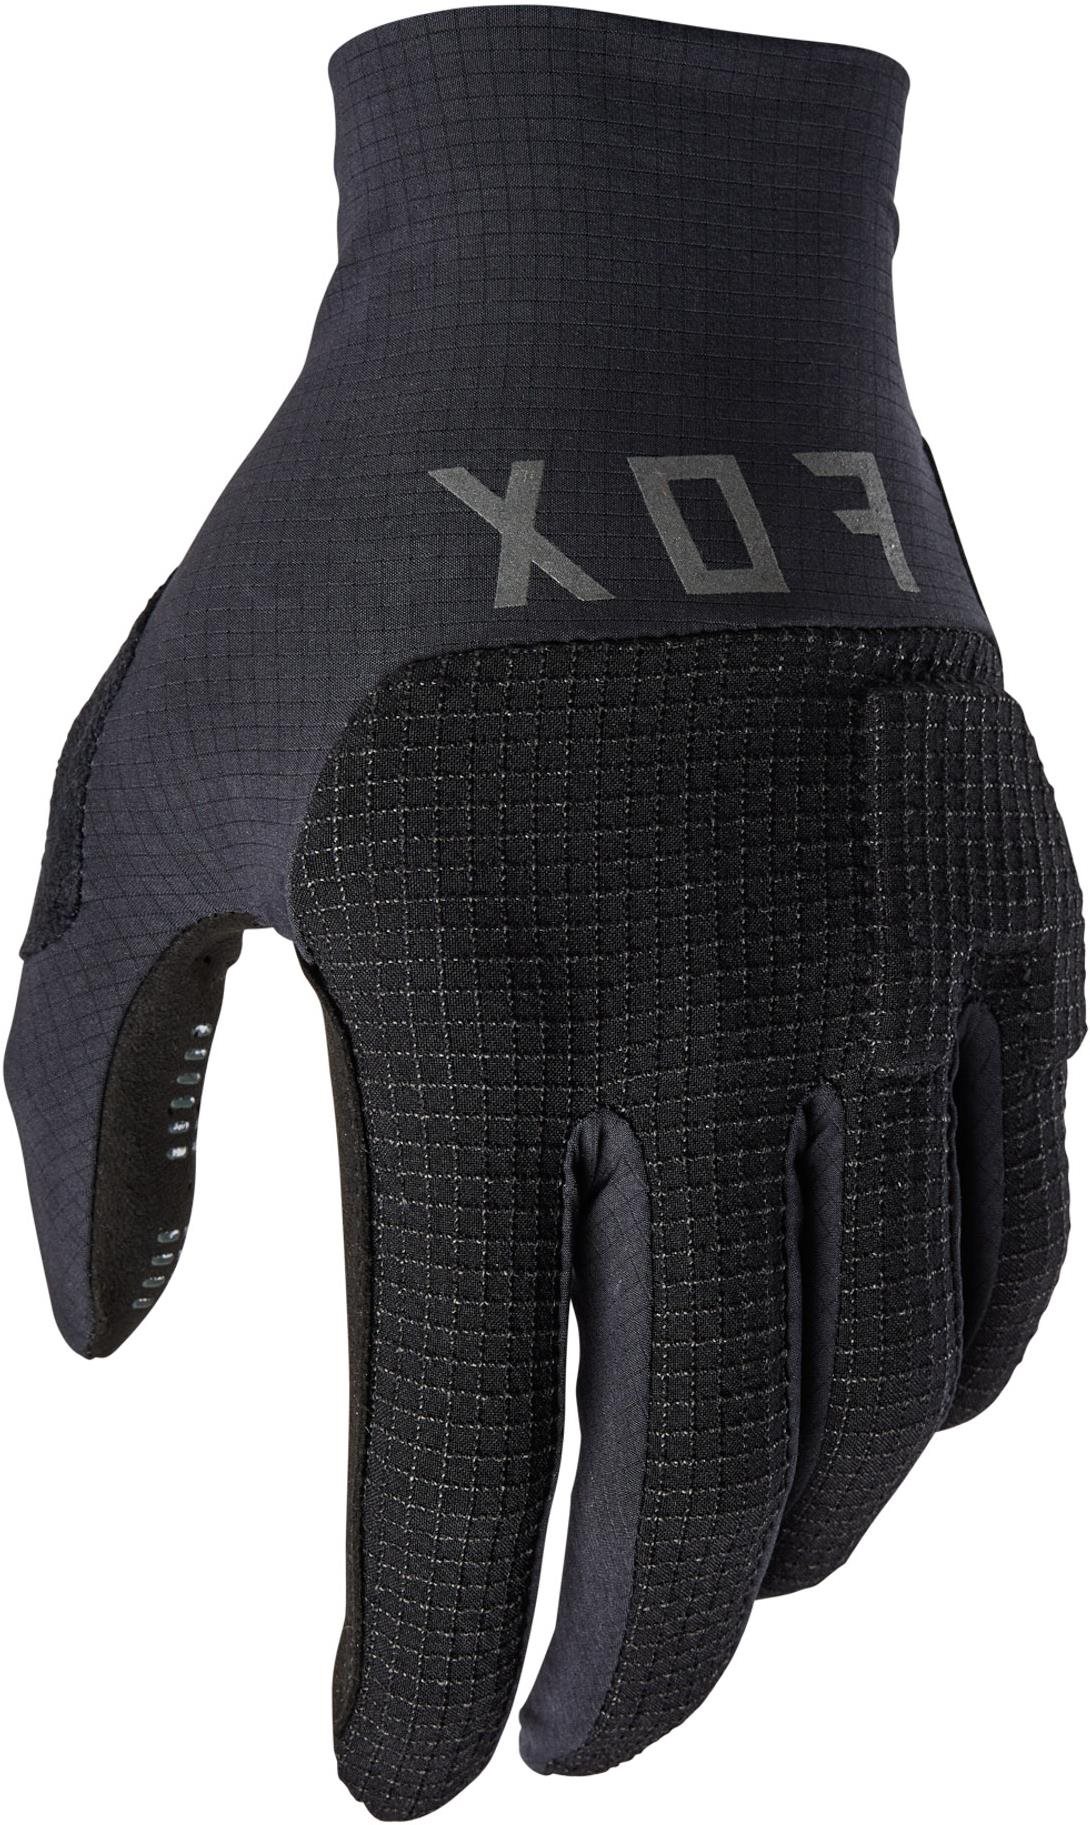 Biciklis kesztyű Fox Flexair Pro Glove XL